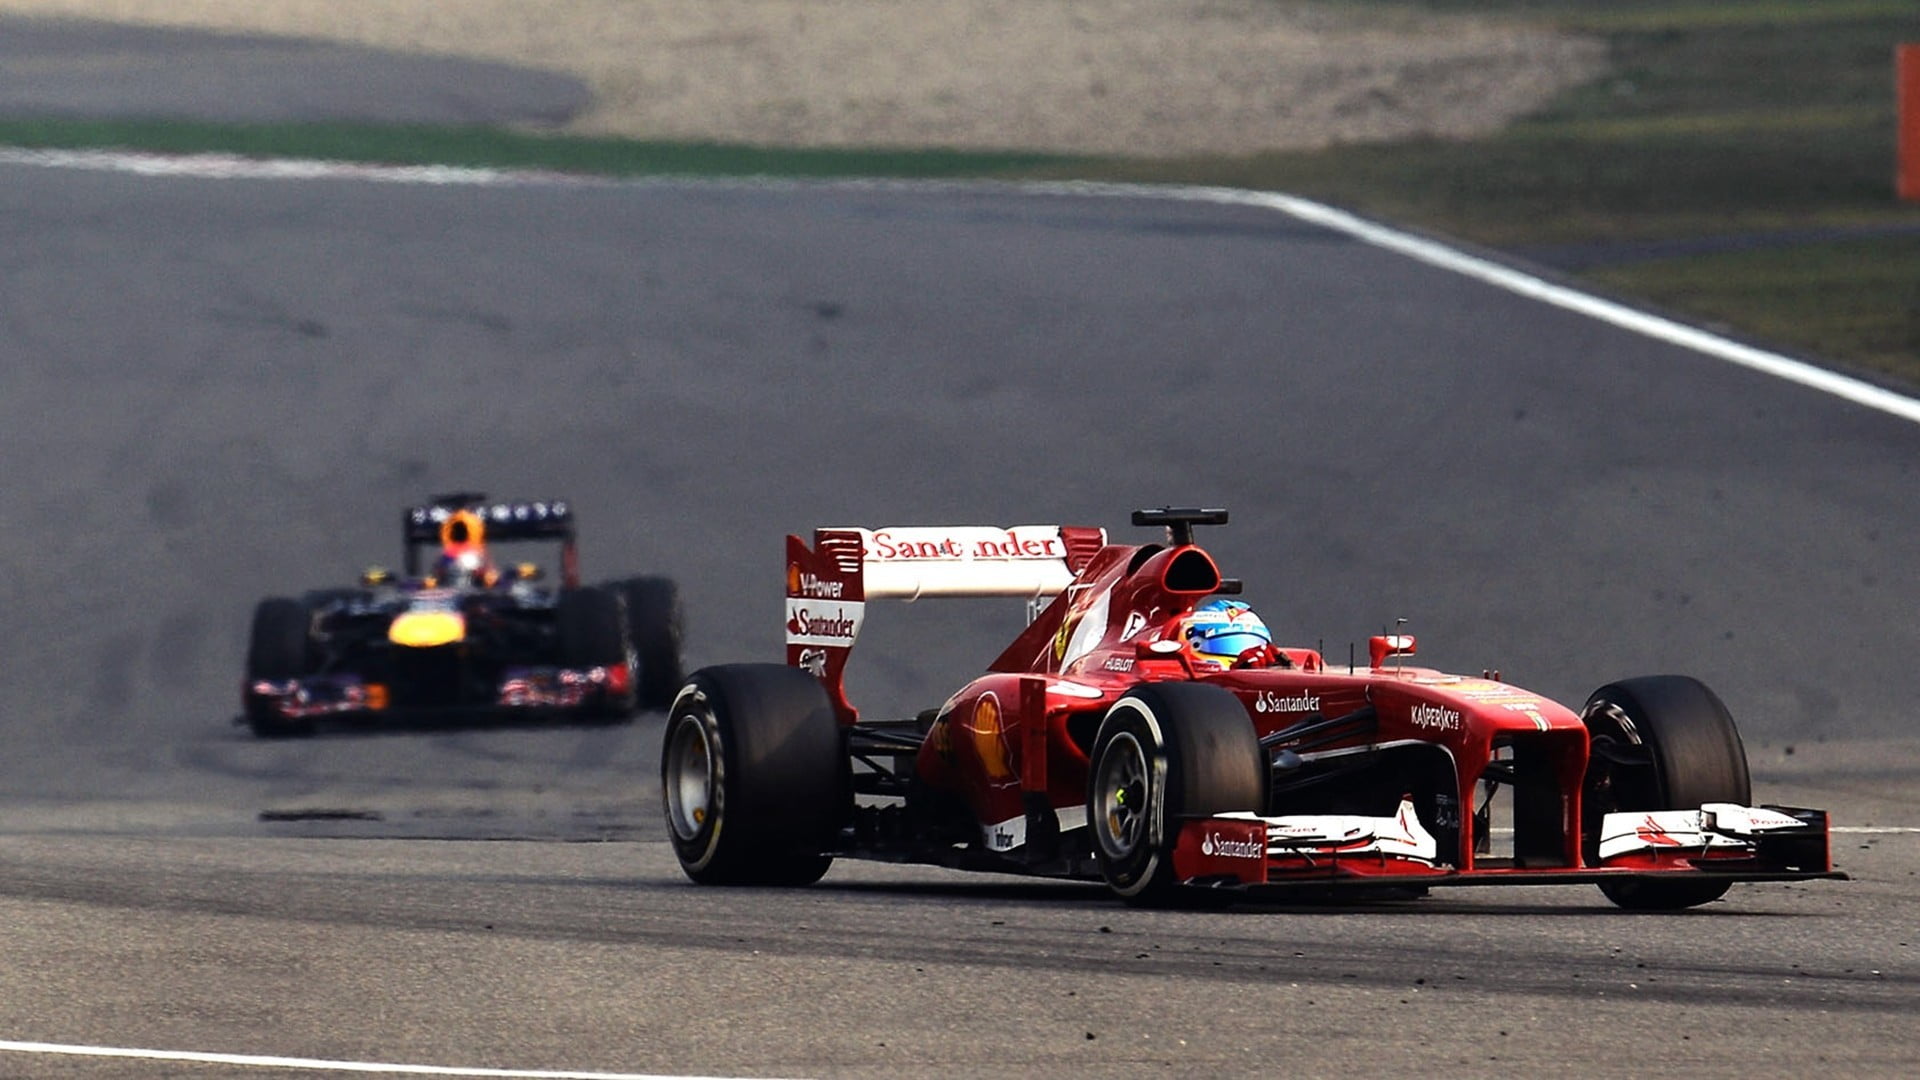 red racing car, Fernando Alonso, Ferrari, Formula 1, Scuderia Ferrari